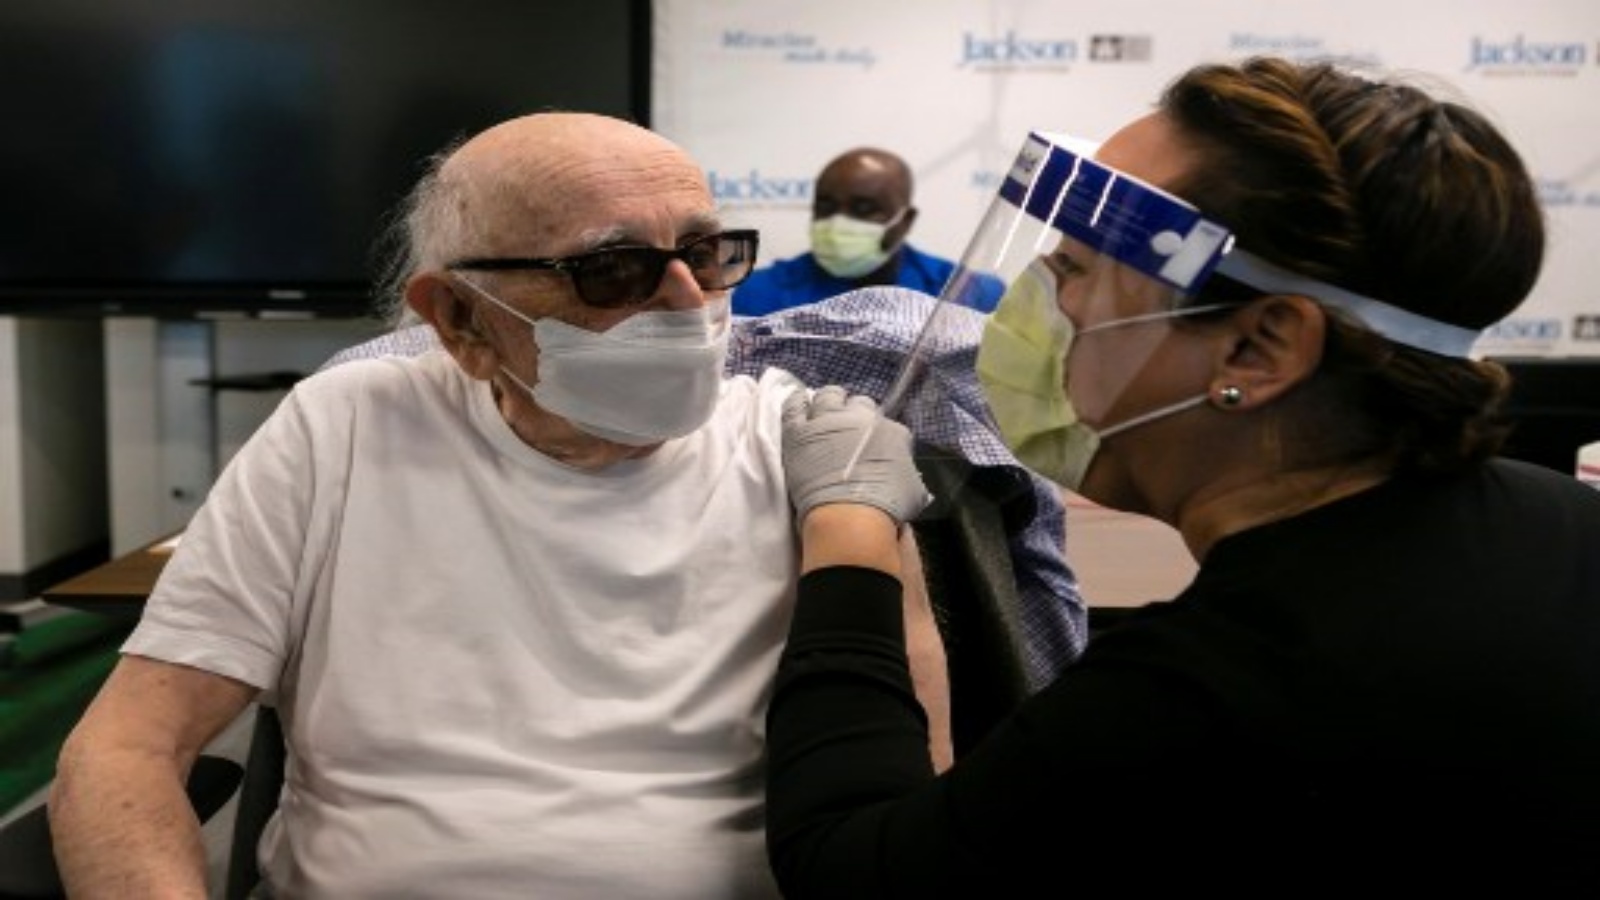 نورمان جي.إينسبروش ، 88 عامًا ، مريض أمراض القلب في مستشفى جاكسون ميموريال ، يتحدث مع ممرضة بعد تلقيه لقاح فايزر-بيونتيك Covid-19 في مركز كريستين إي لين لإعادة التأهيل ، في ميامي ، فلوريدا